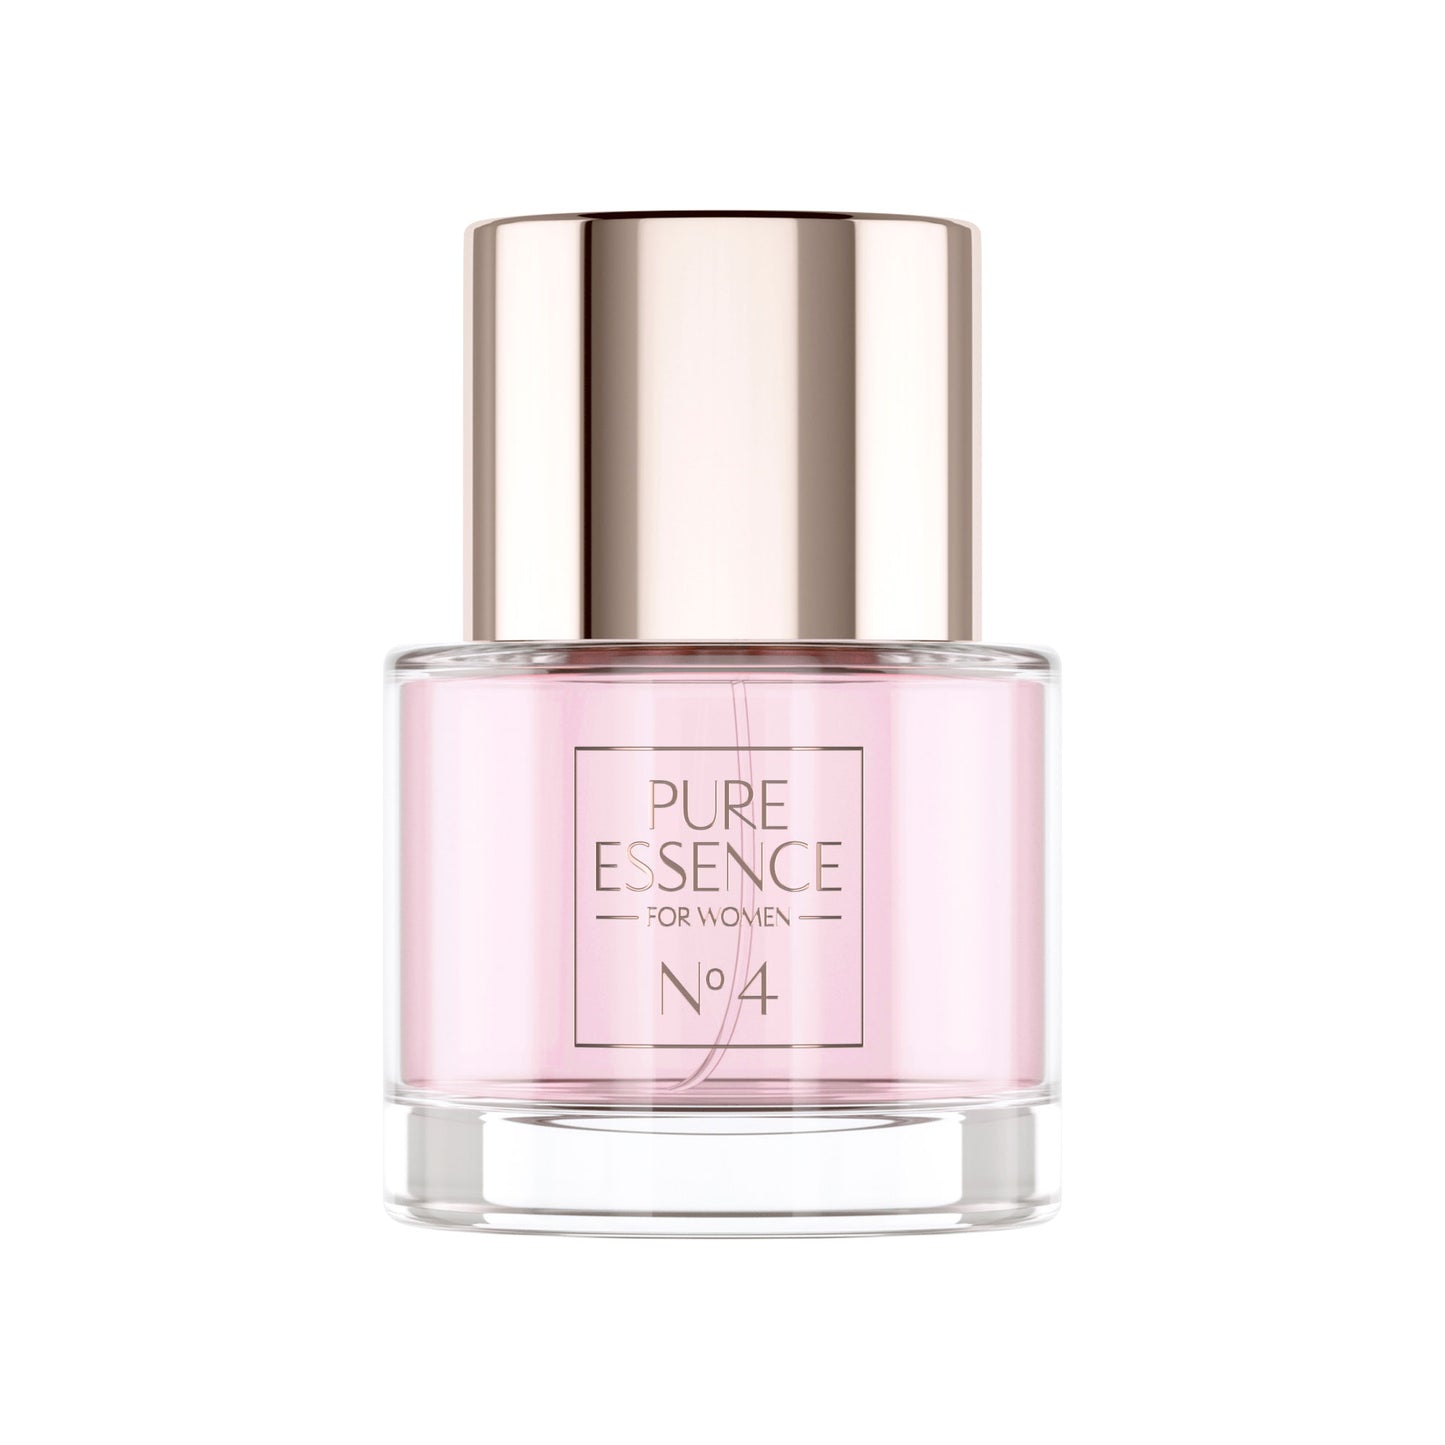 Vitabay Essence Fine Fragrance for Women No. 4 - 50 ml – Eau de Parfum 10% Parfümöl Vaporisateur / S